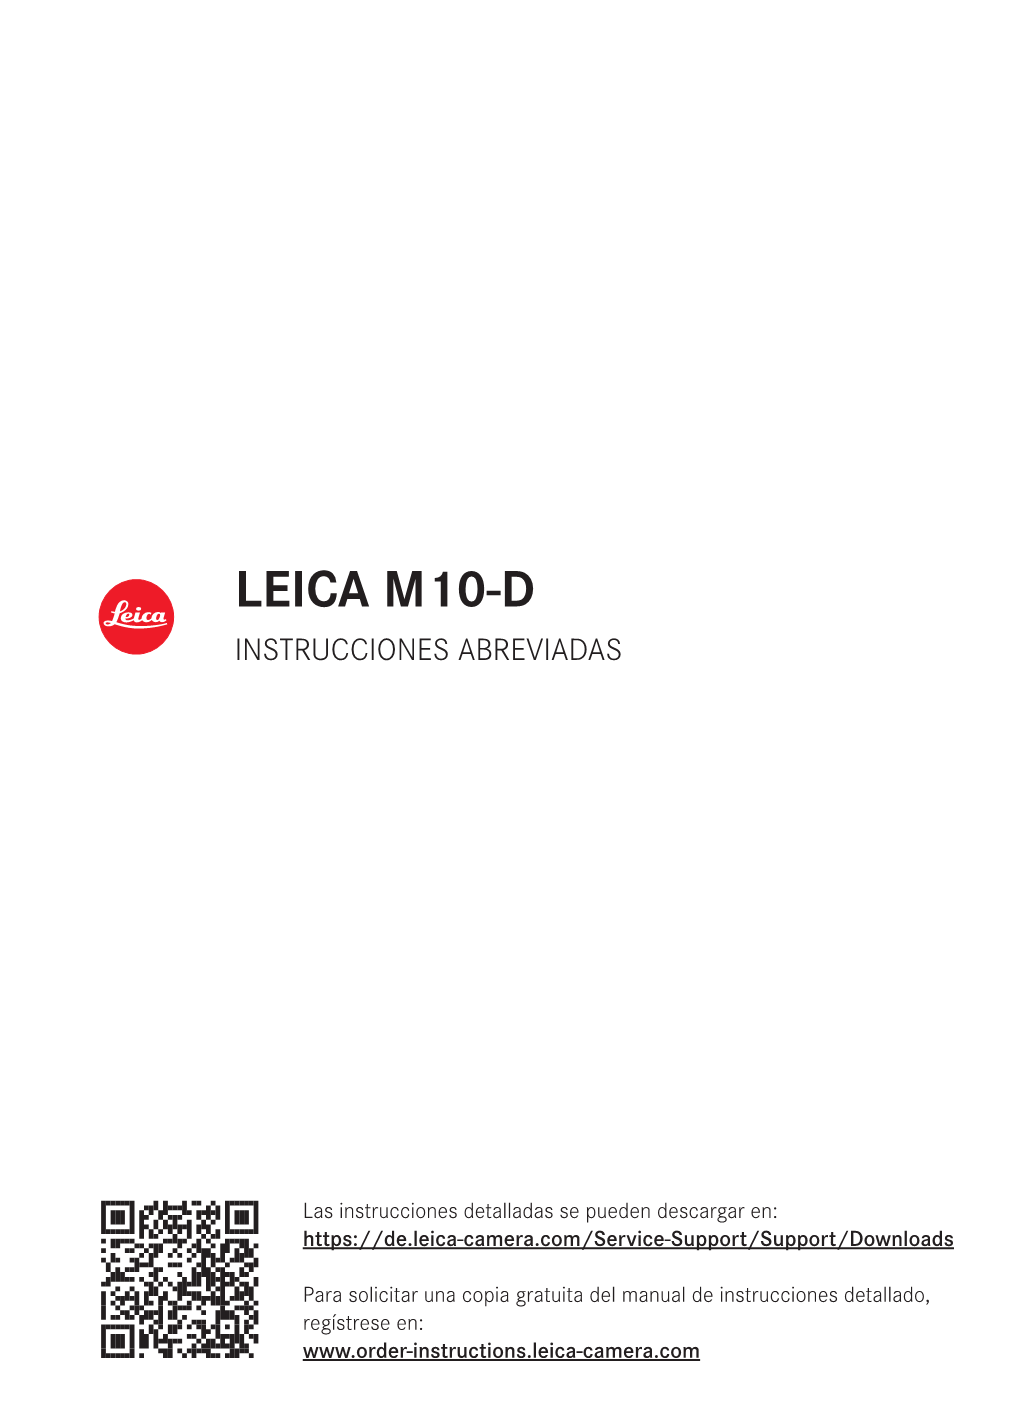 Leica M10-D Instrucciones Abreviadas